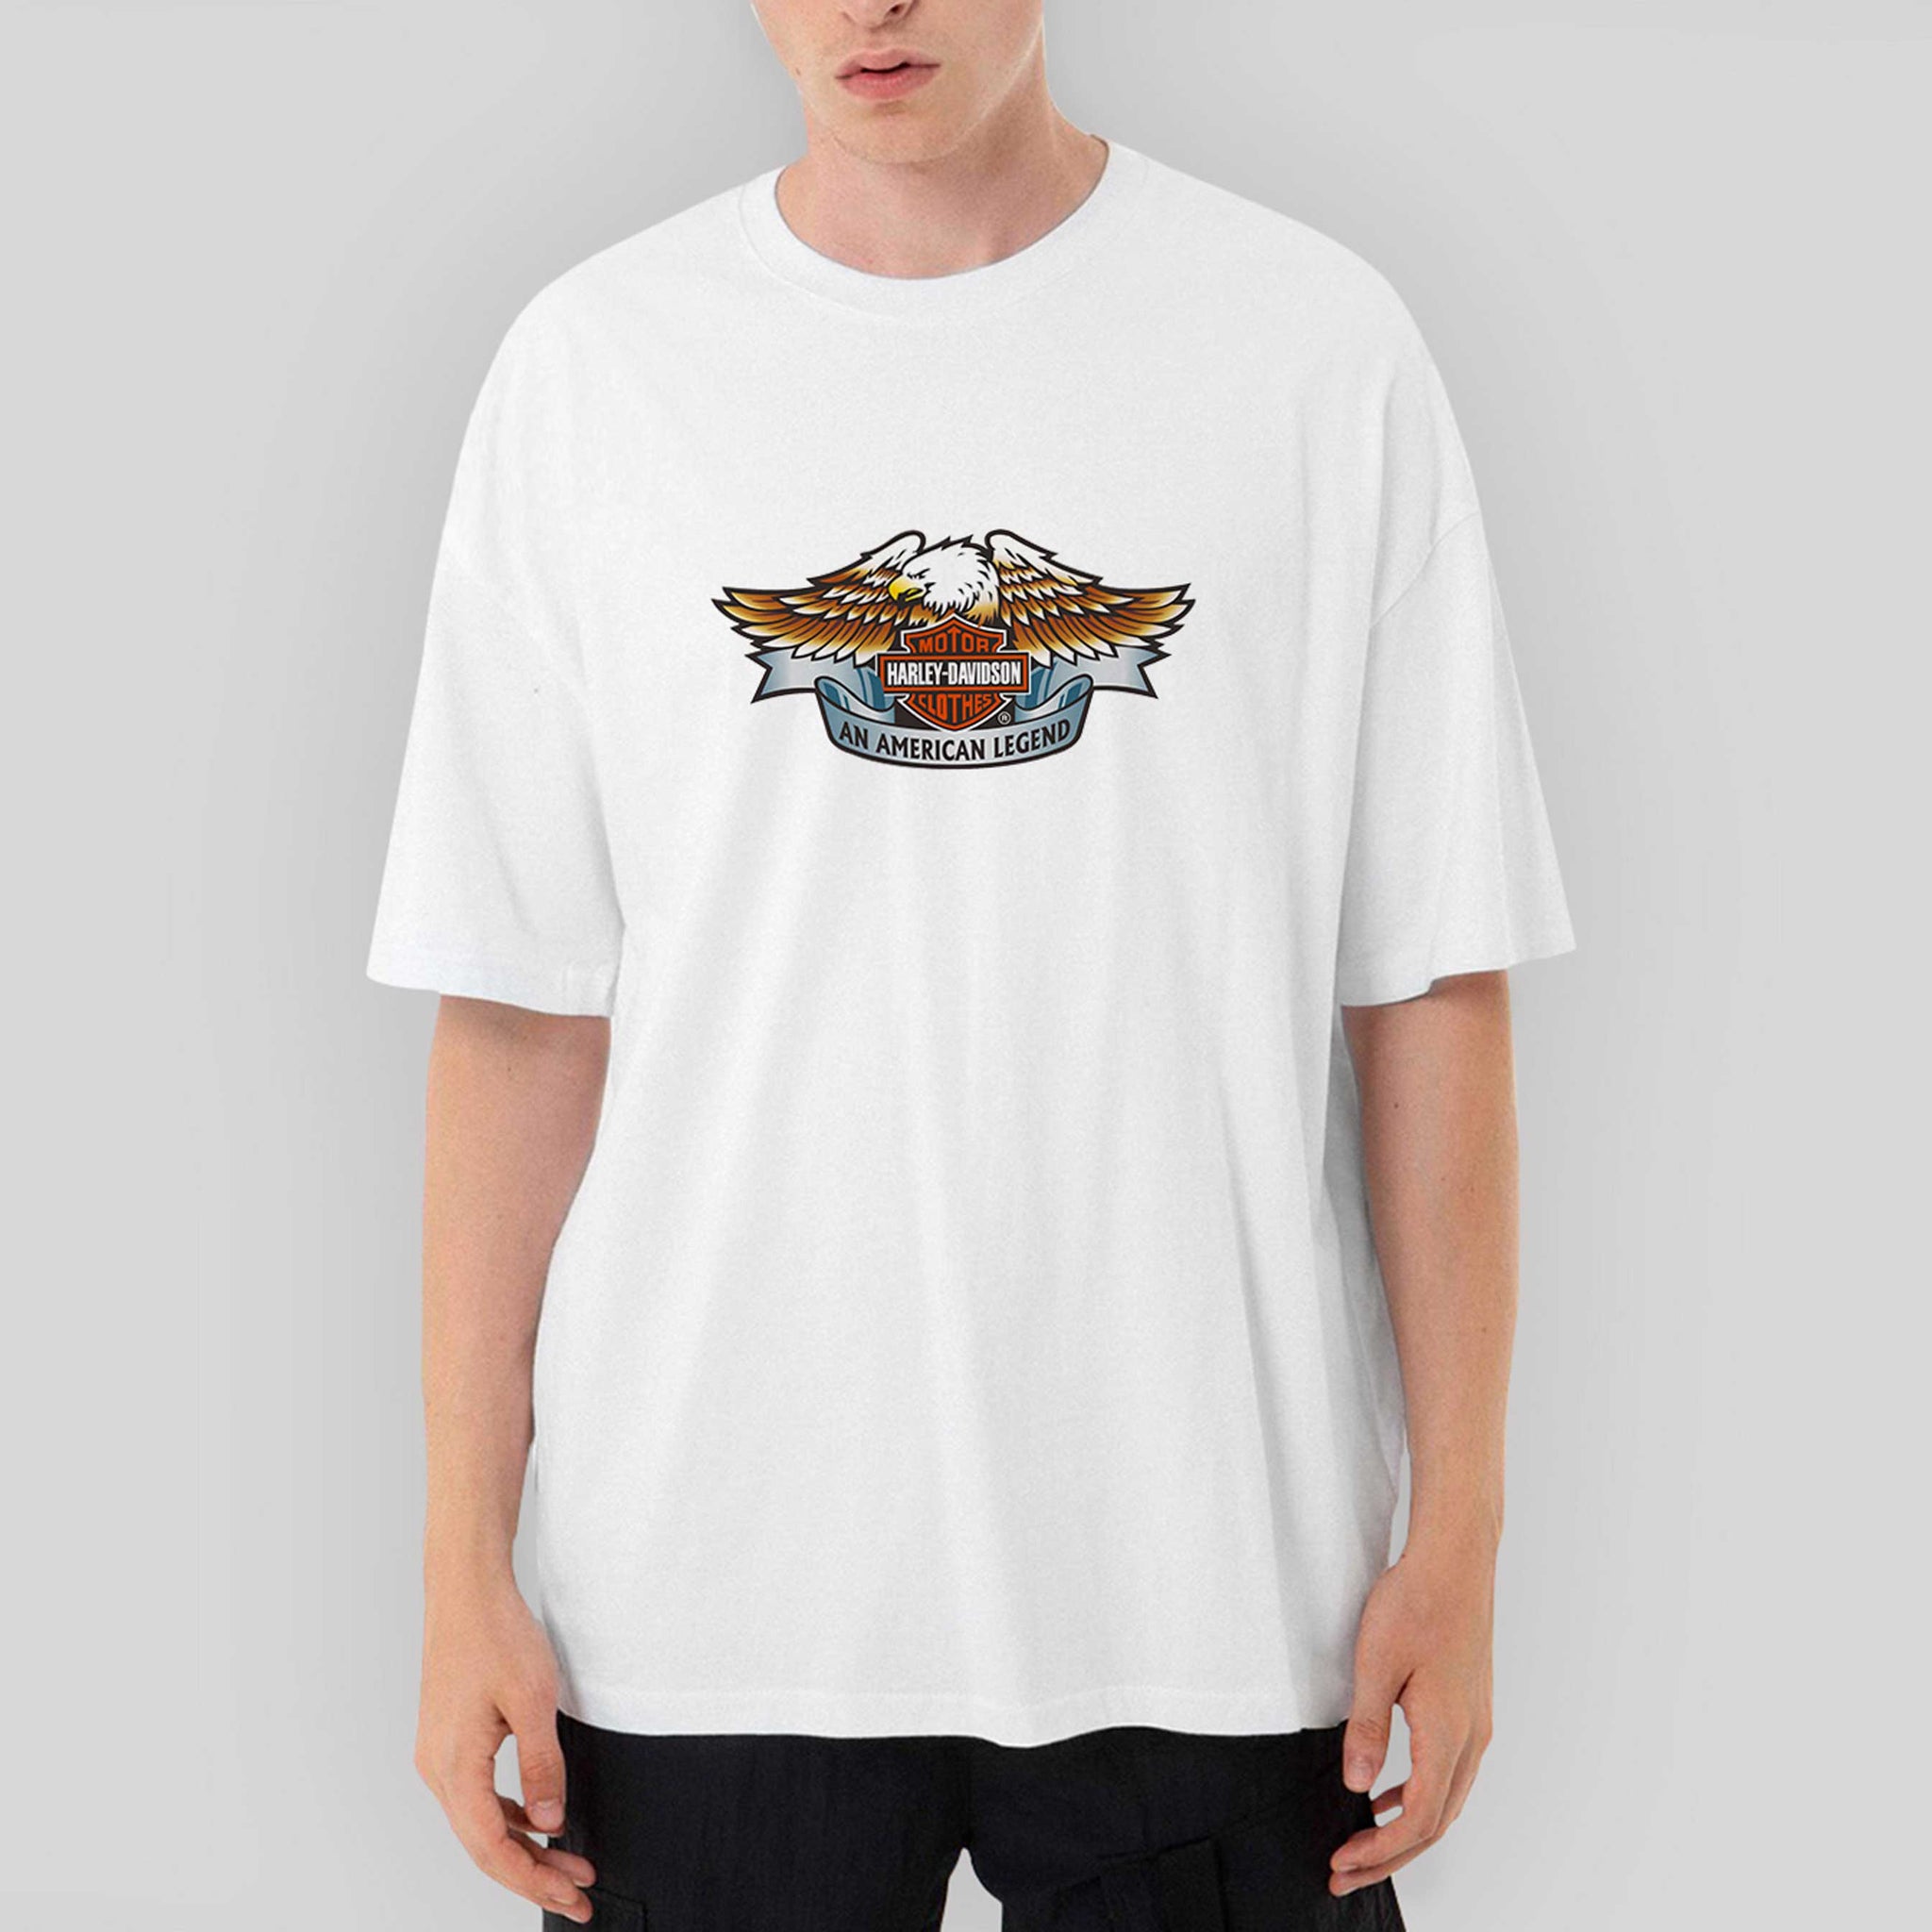 Harley Davidson An American Legend Oversize Beyaz Tişört